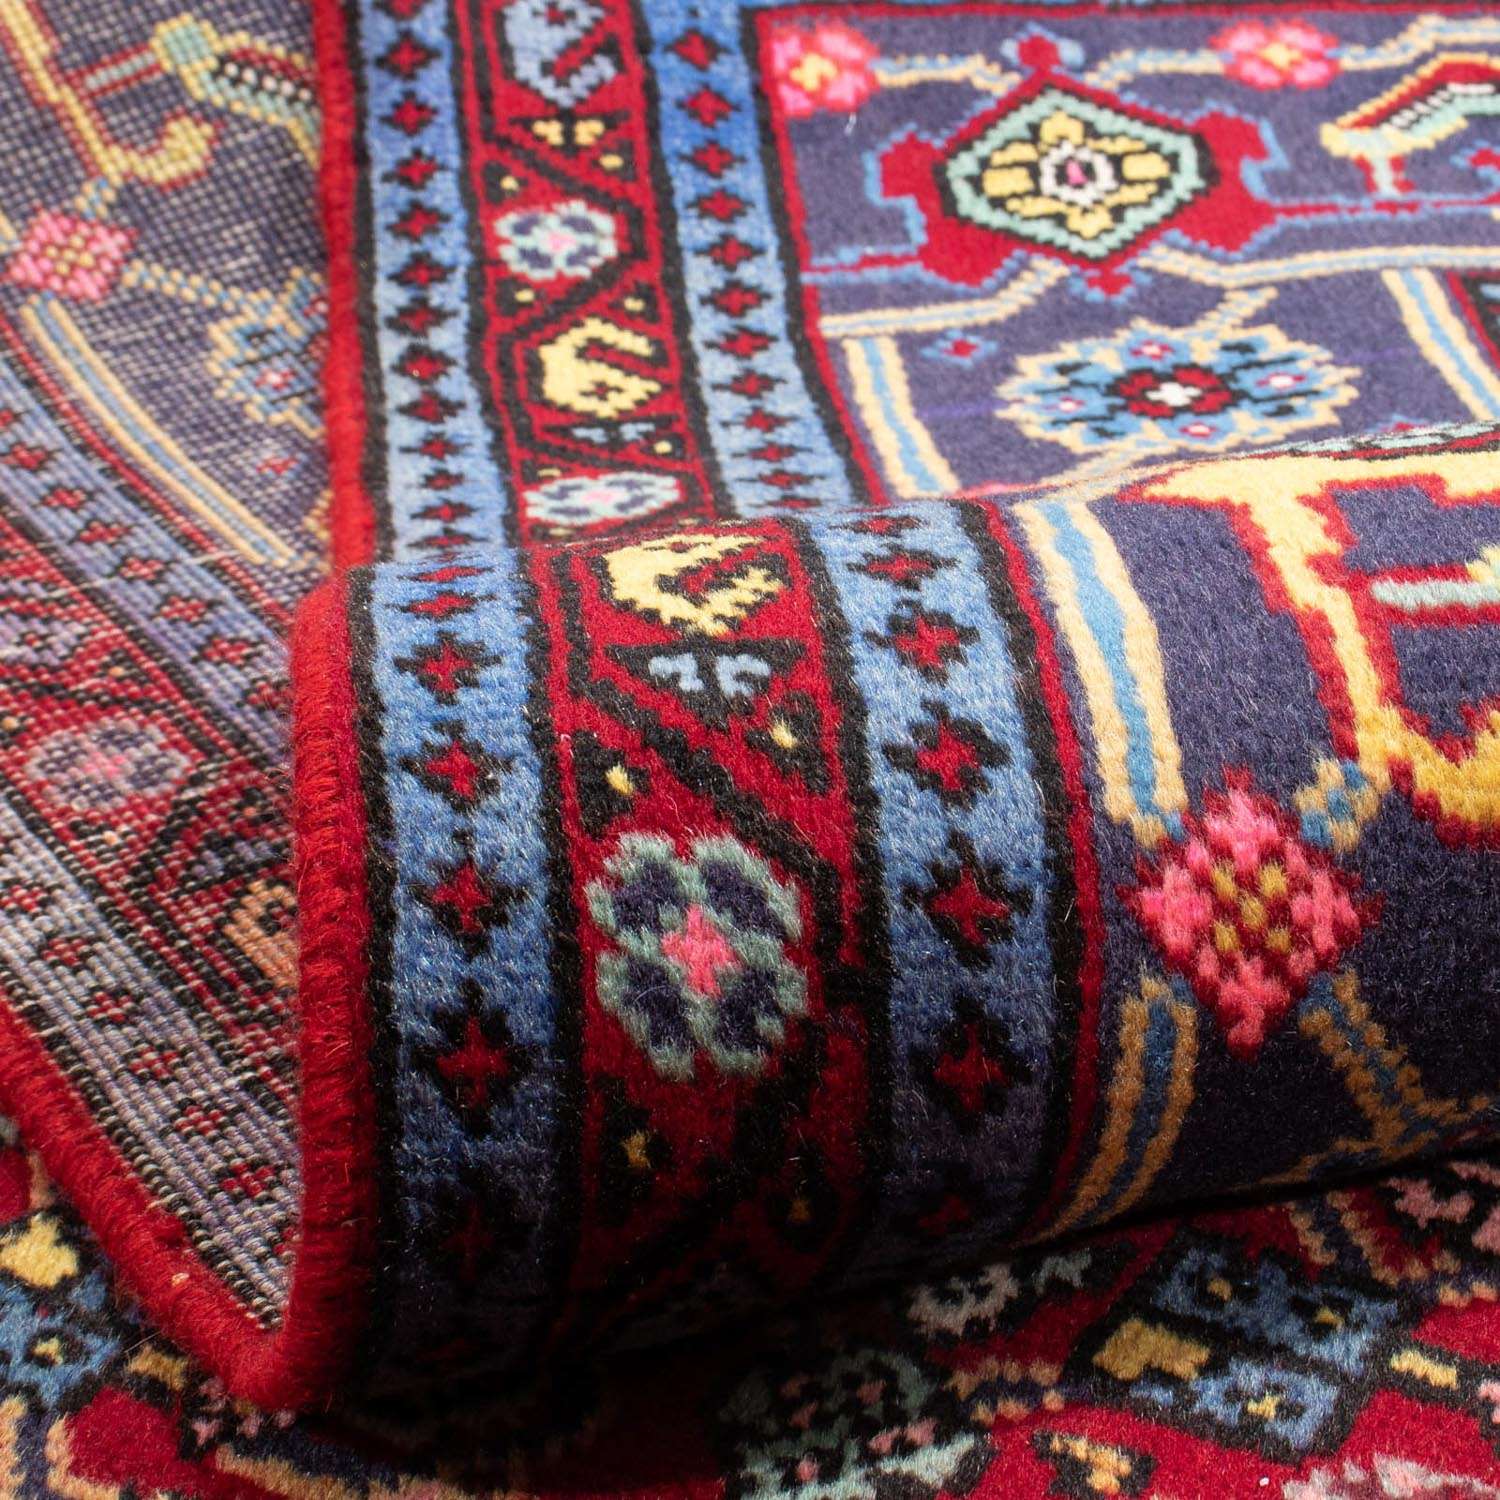 Persisk teppe - Nomadisk - 292 x 190 cm - rød